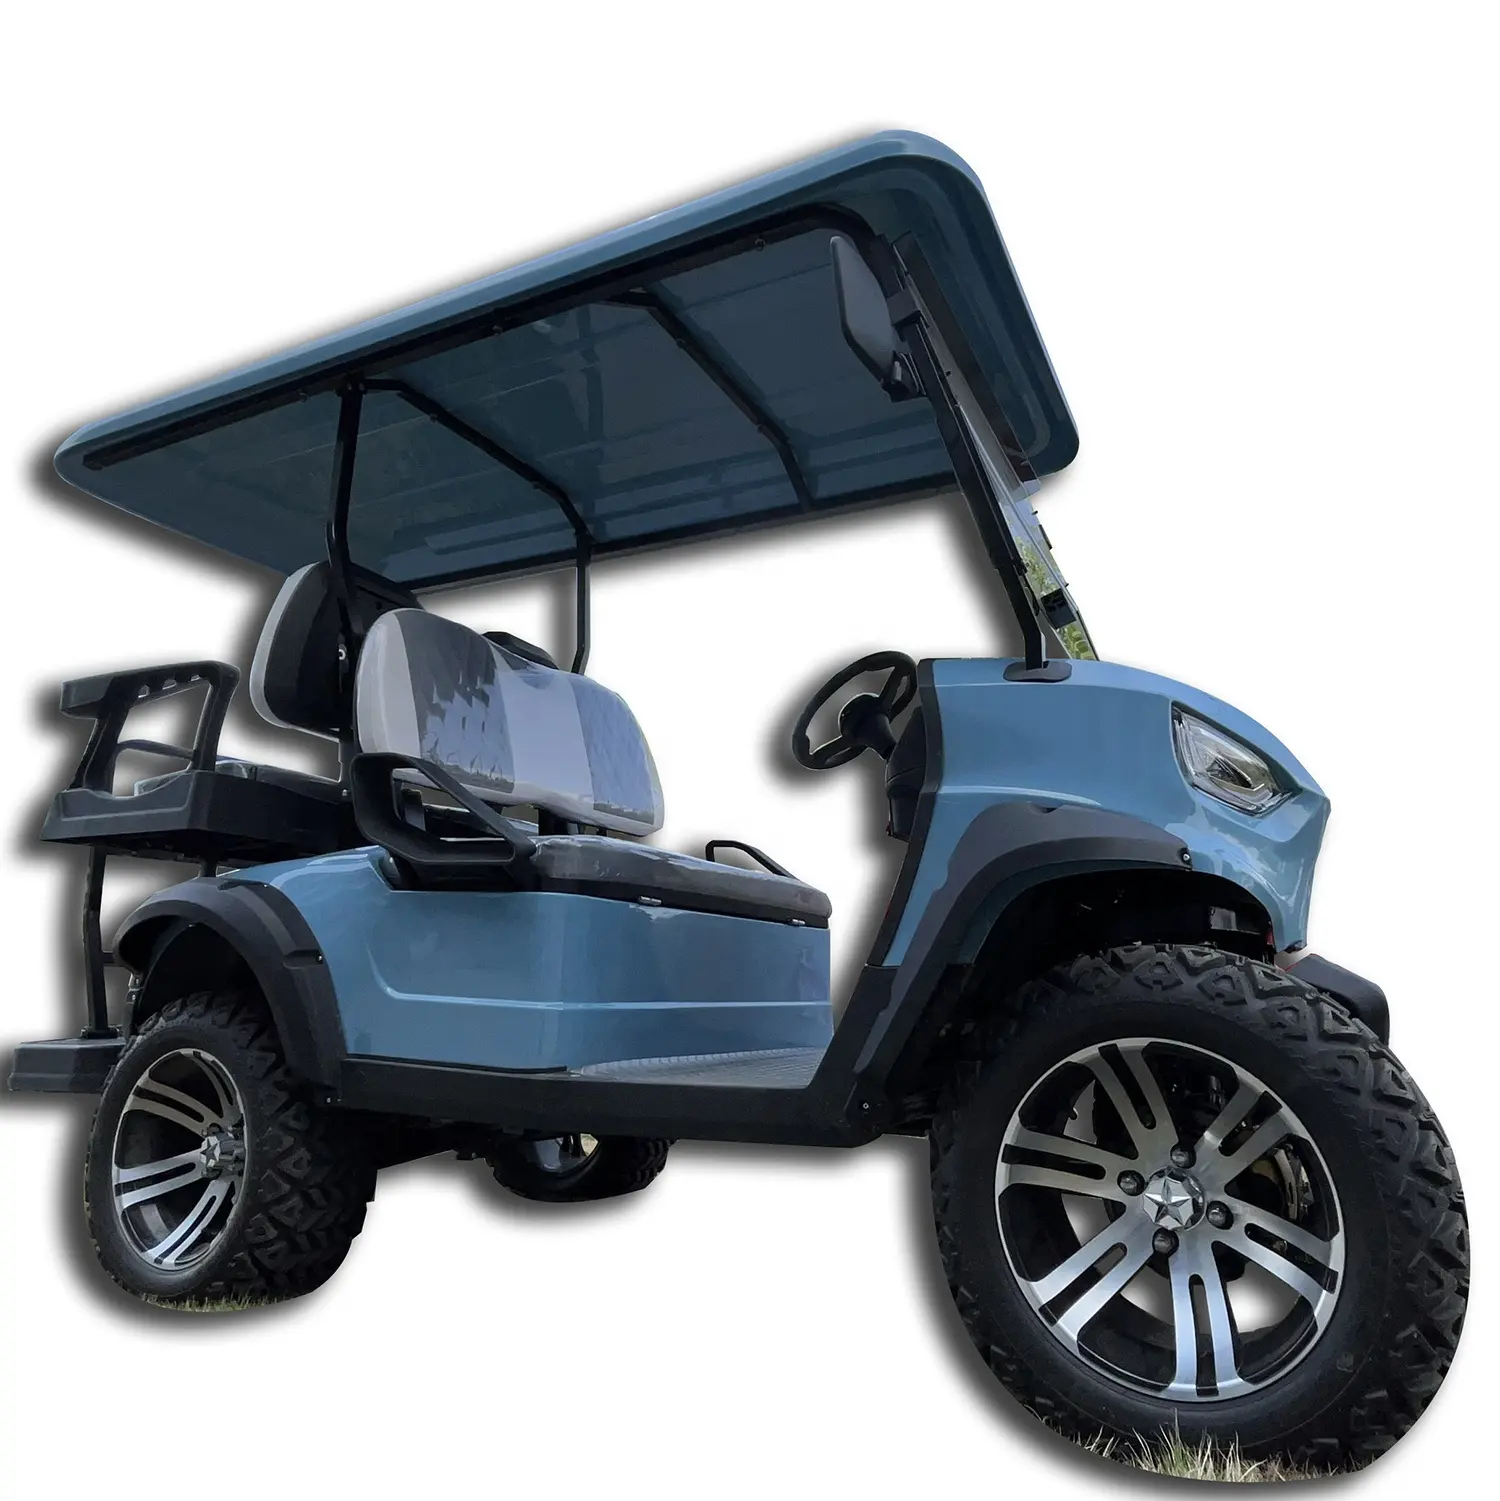 Versorgungs person Halten Sie 6 Sitze Golf Cart Street Legal Vehicle Verifiziert von SGS